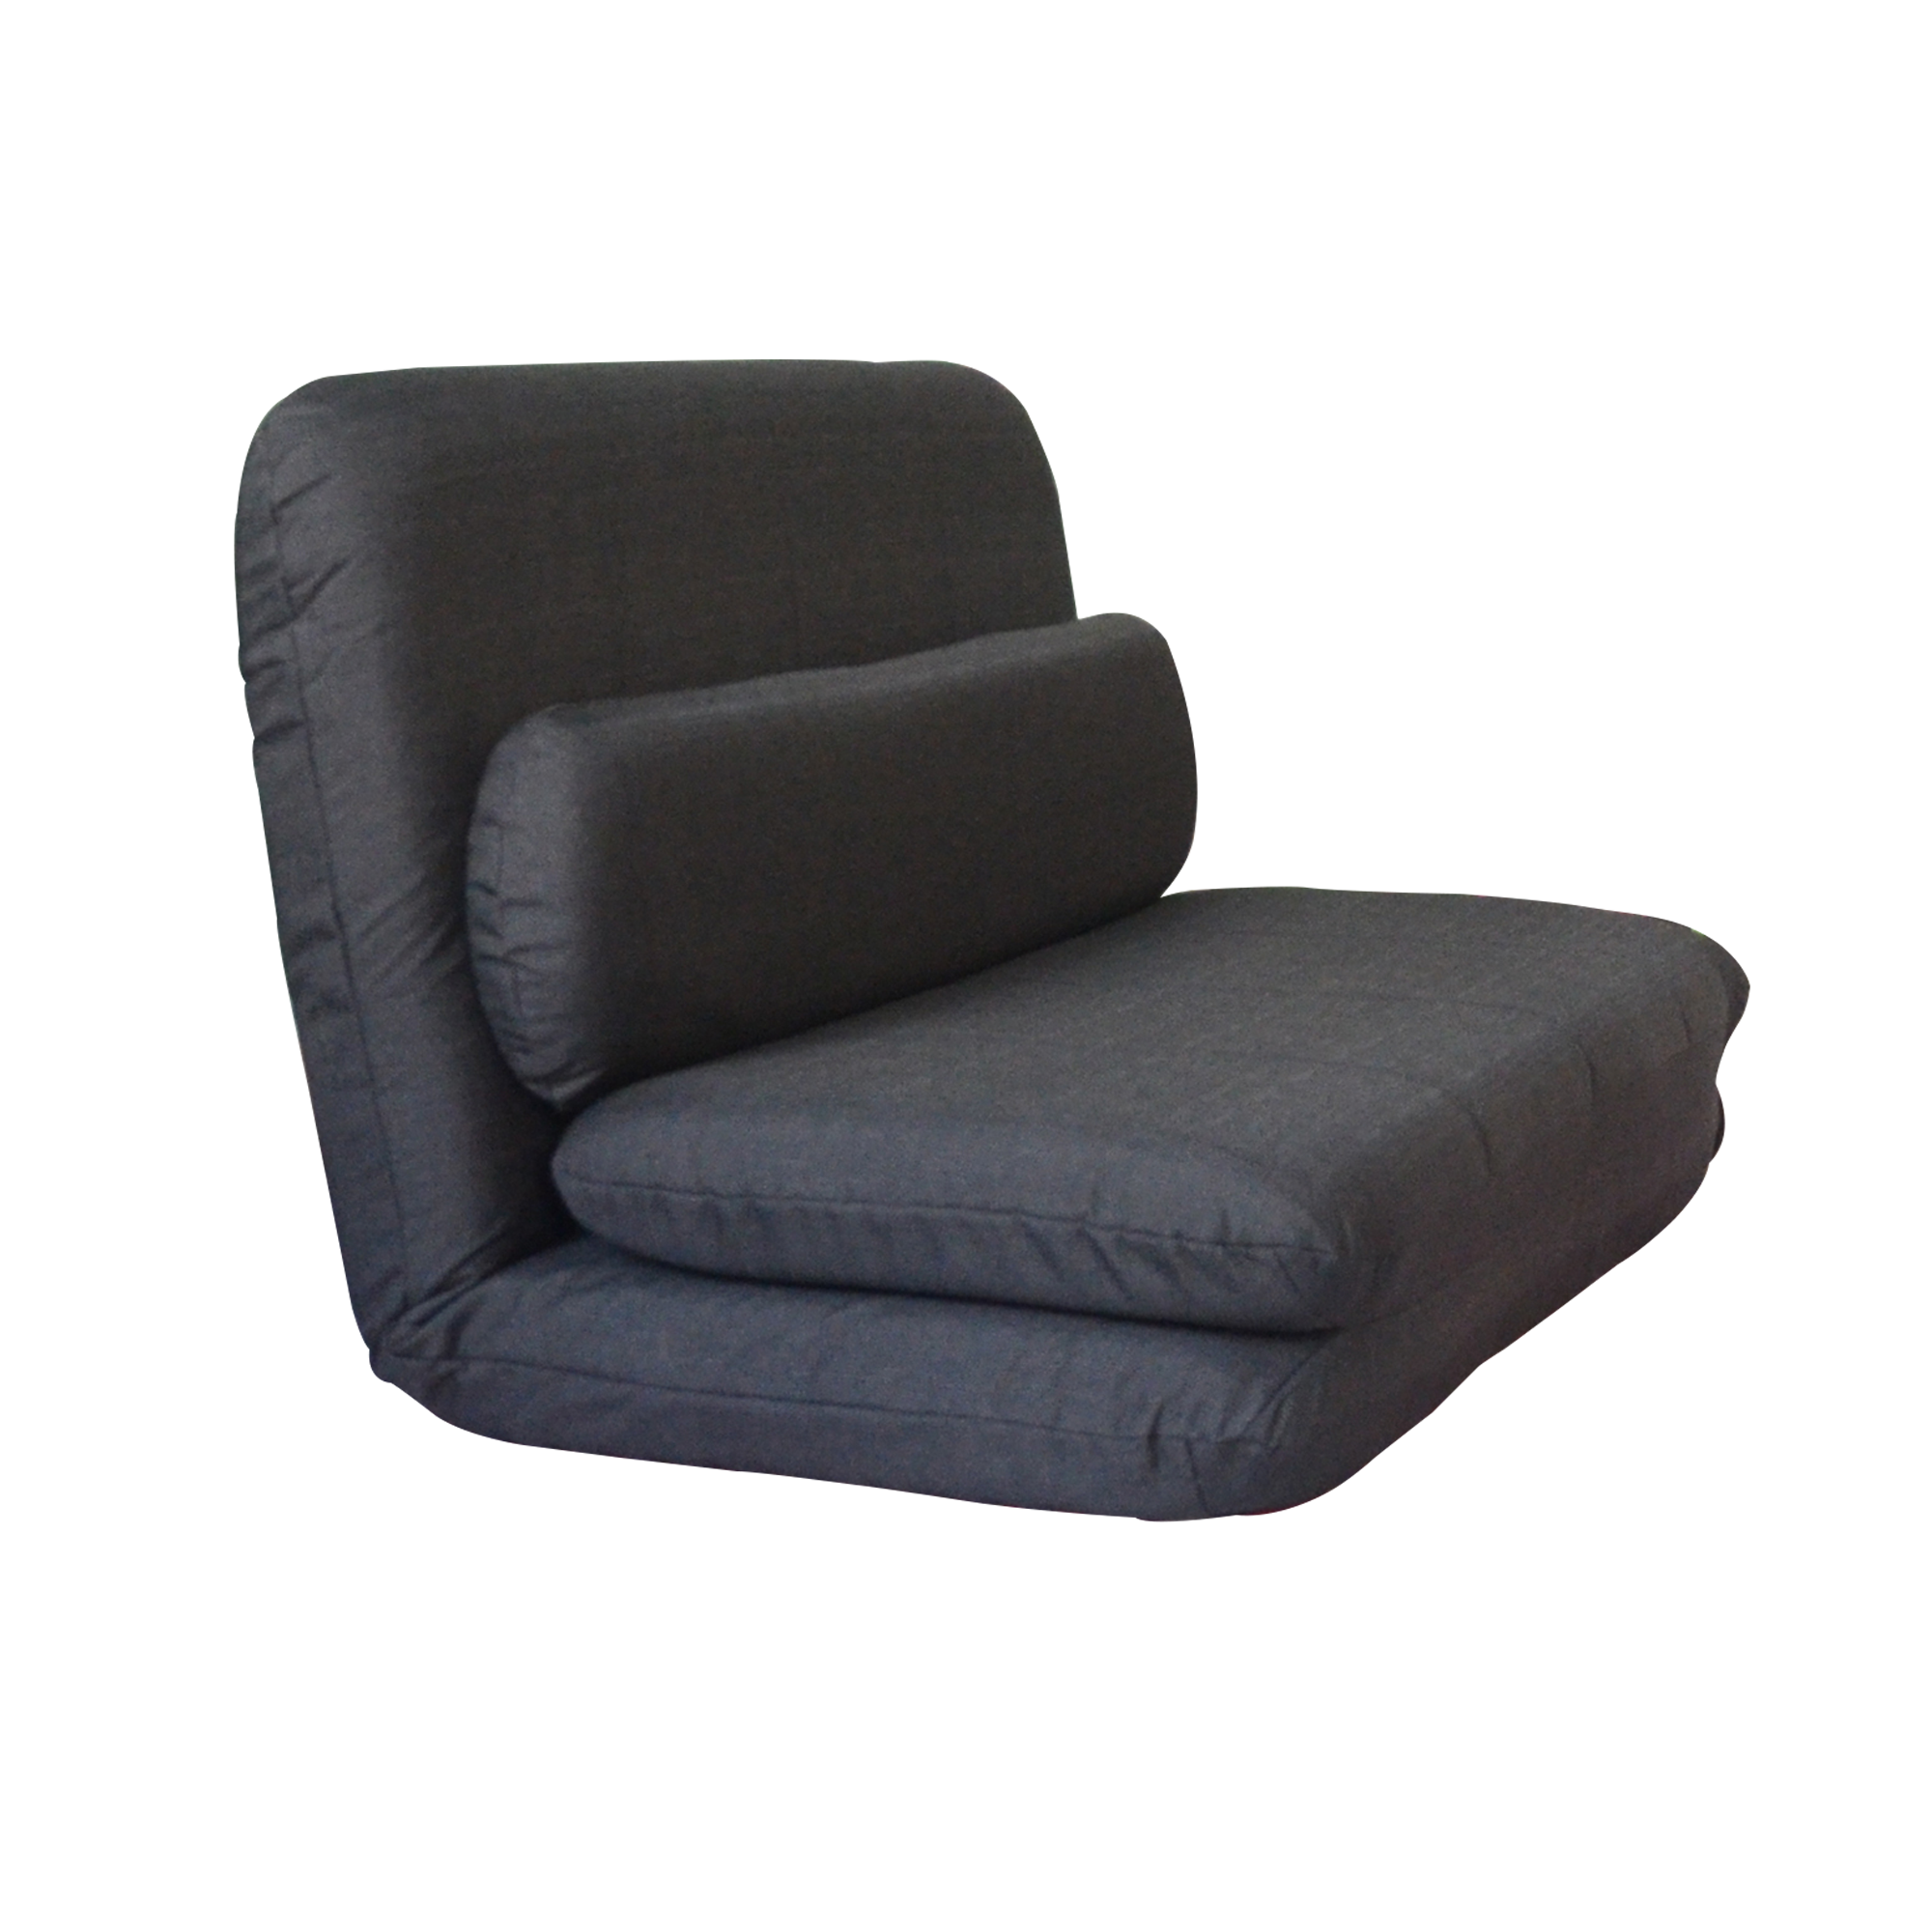 RaDEWAY Floor Chair Sofa Bed Folding